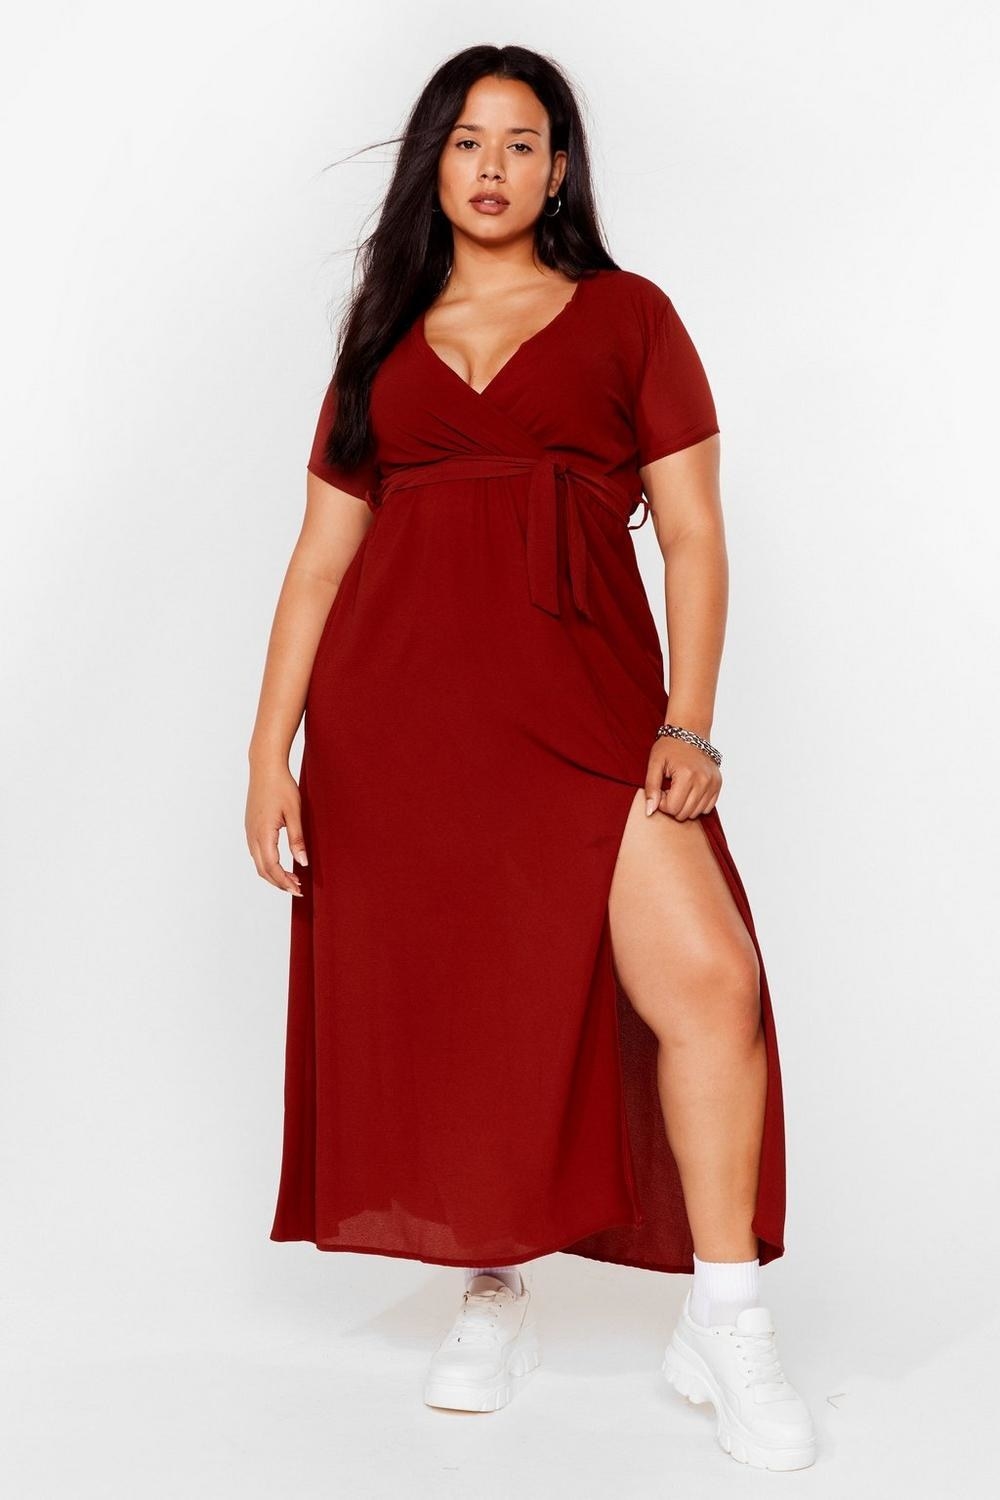 model wearing red V-neck dress with slit